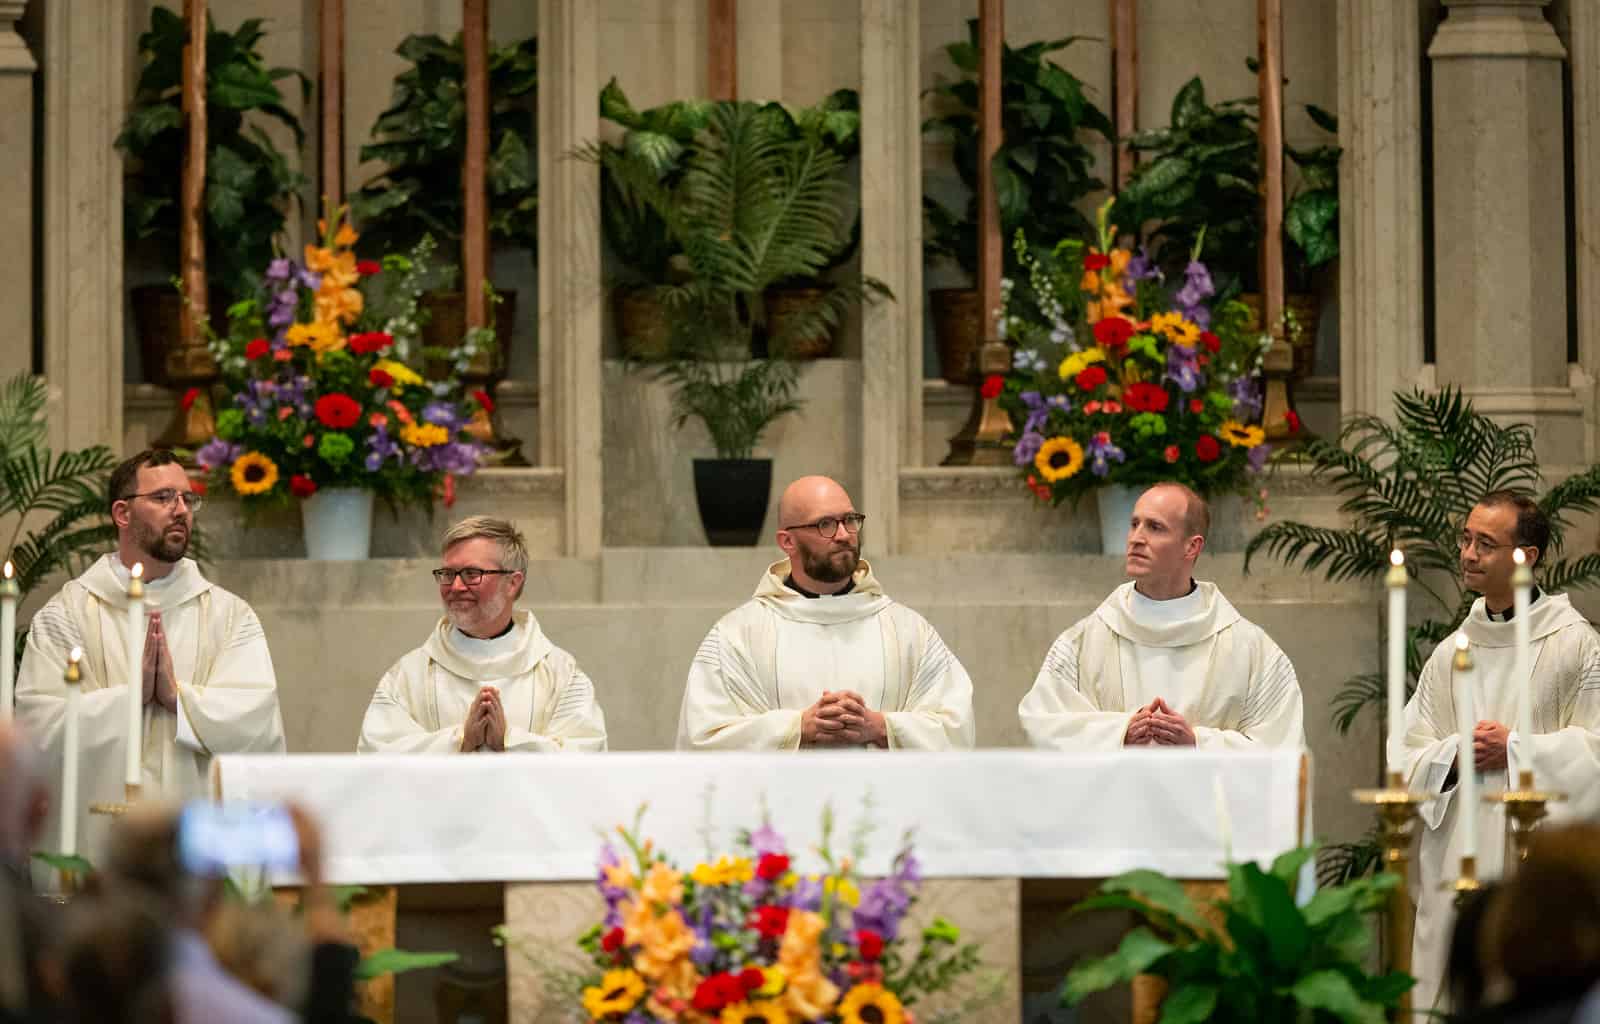 Jesuit-Lightning family ties run deep